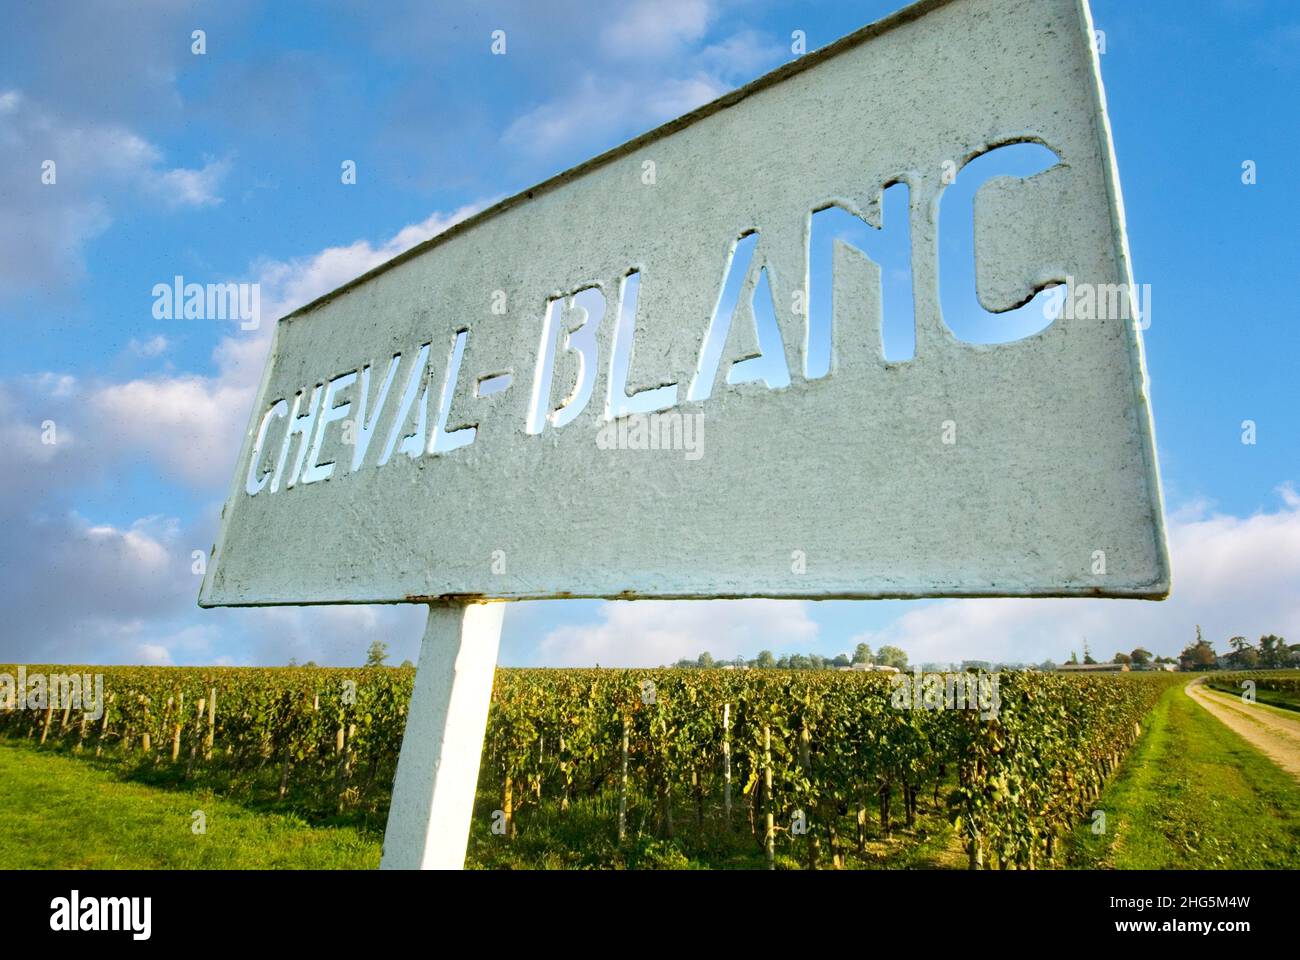 Château Cheval Blanc Eingangsschild und Weinberge mit blauem Himmel, am Eingang zum renommierten edlen roten Grand Cru classé Weinproduzenten in Saint-Émilion, Bordeaux Weinregion von Frankreich Cheval Blanc Schild mit herbstlichem Weinberg hinter Saint Emilion Gironde France Stockfoto